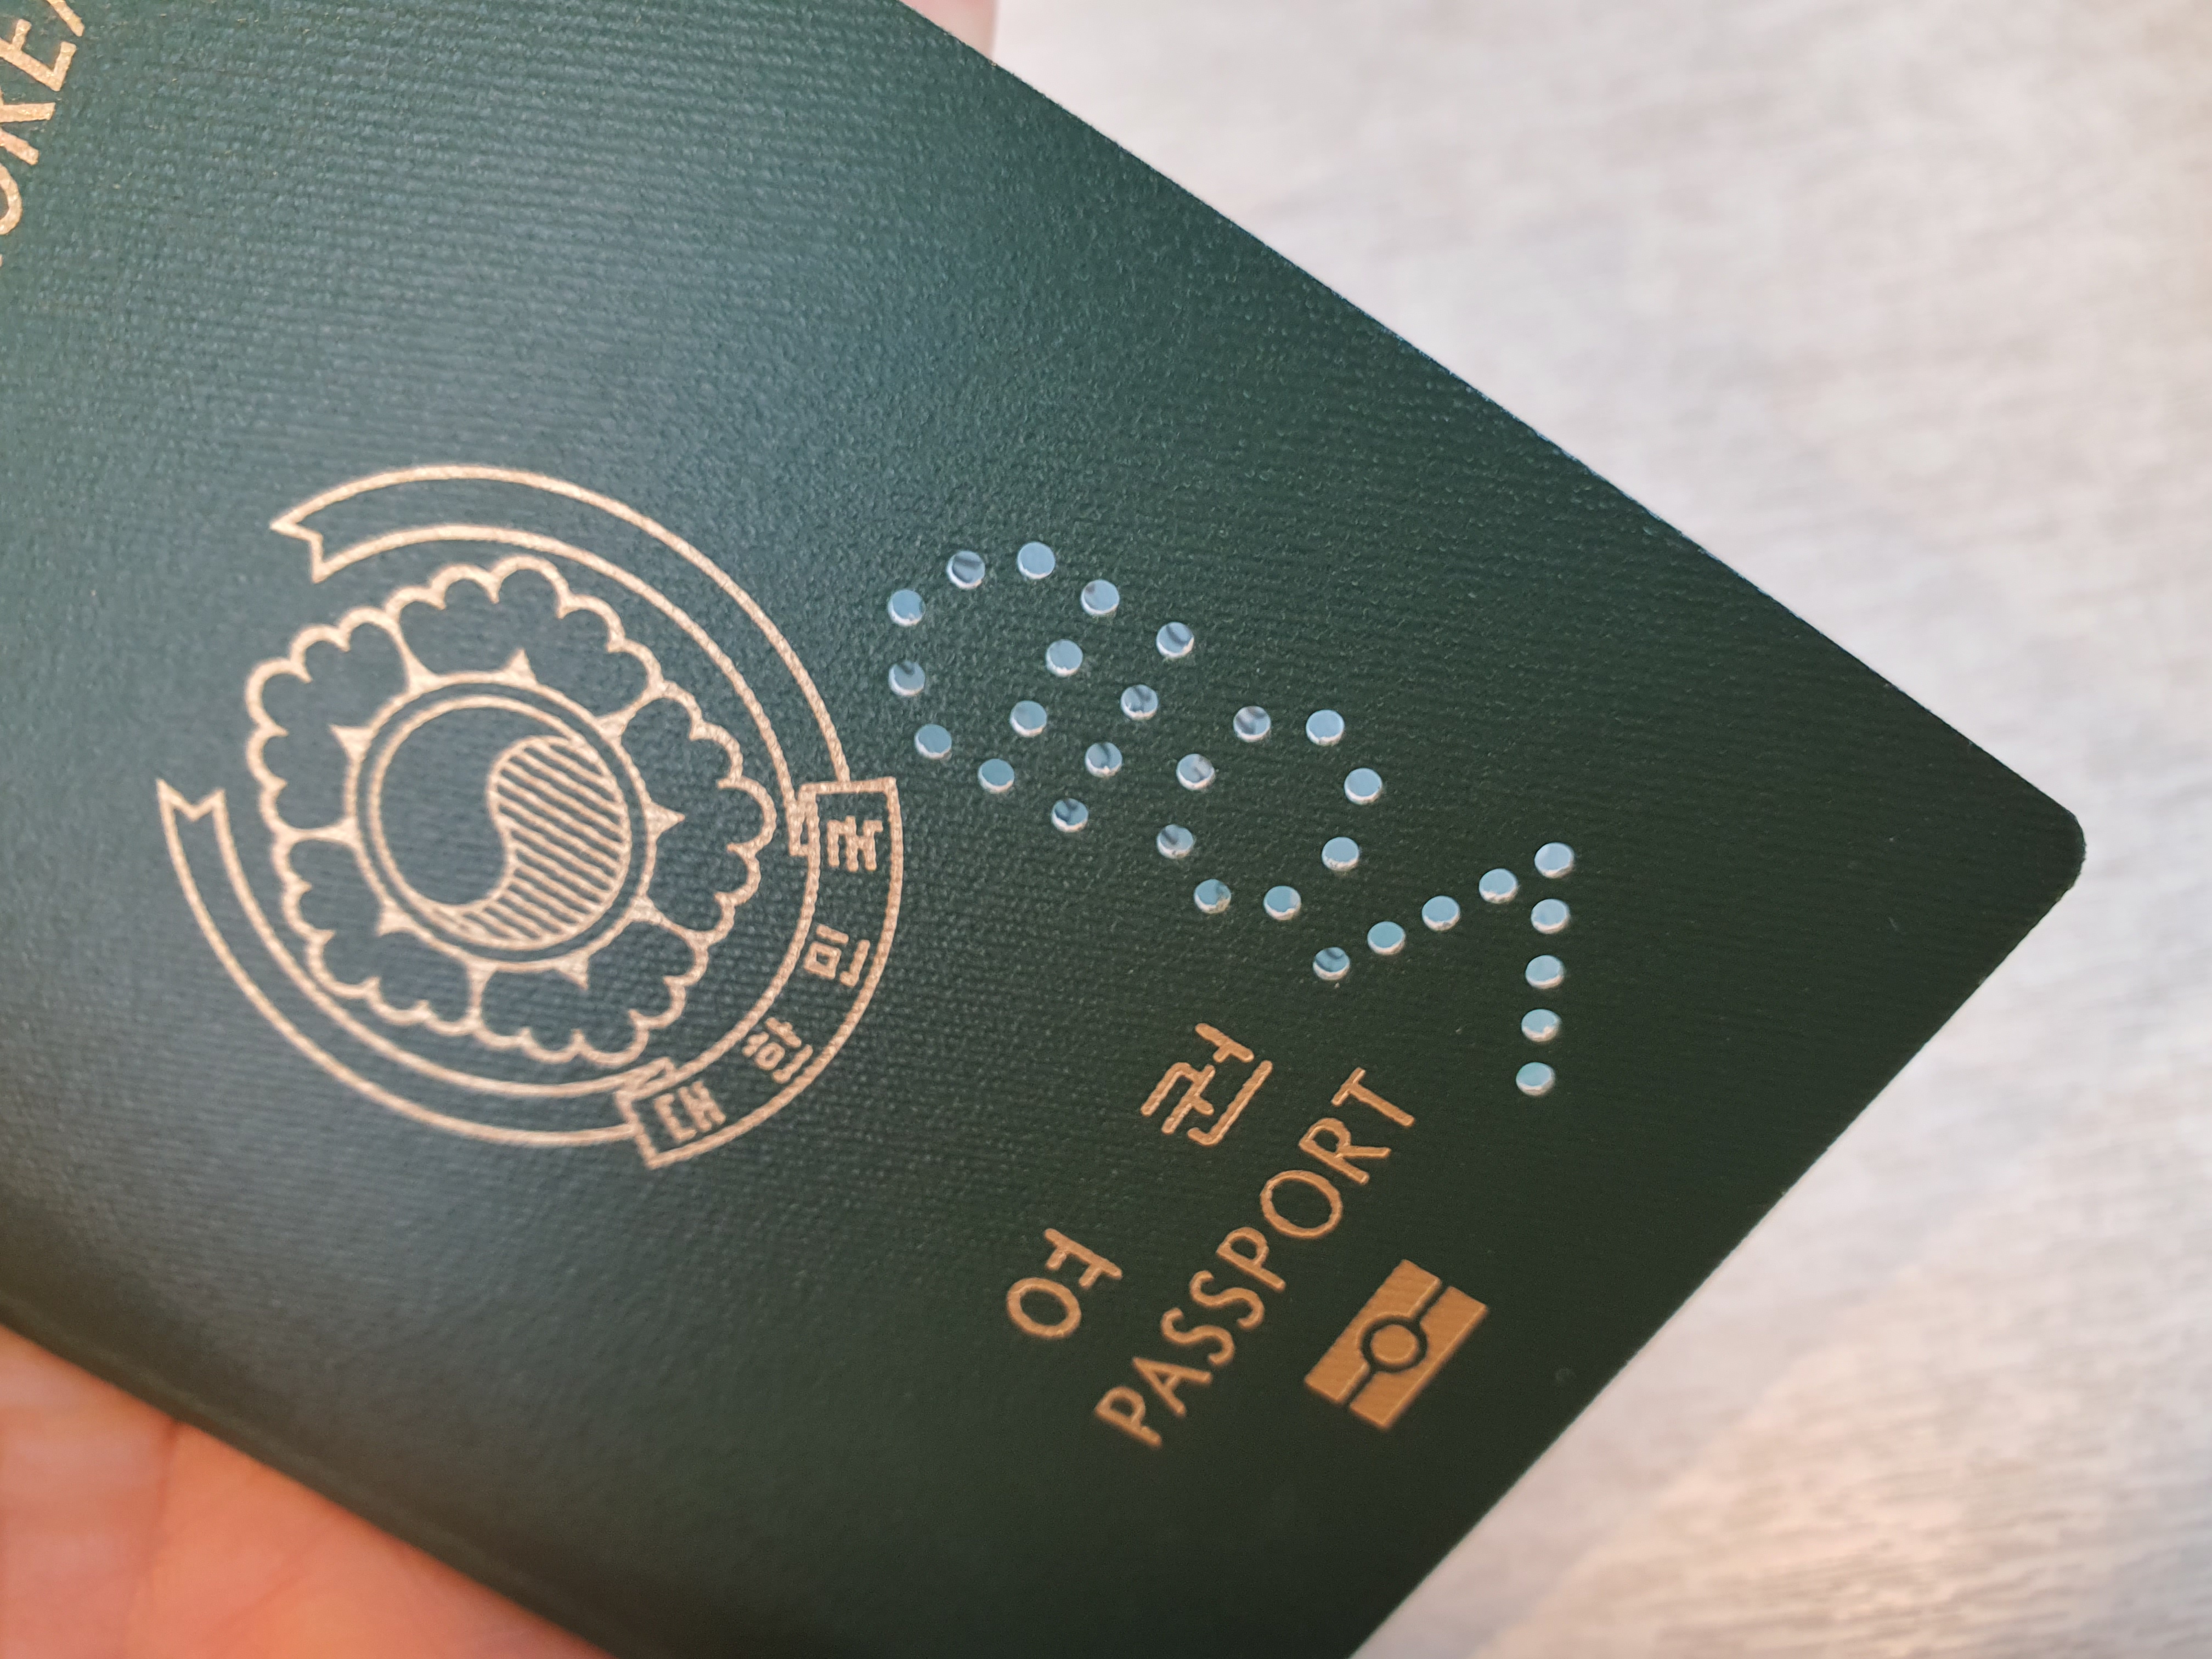 여권 훼손 기준